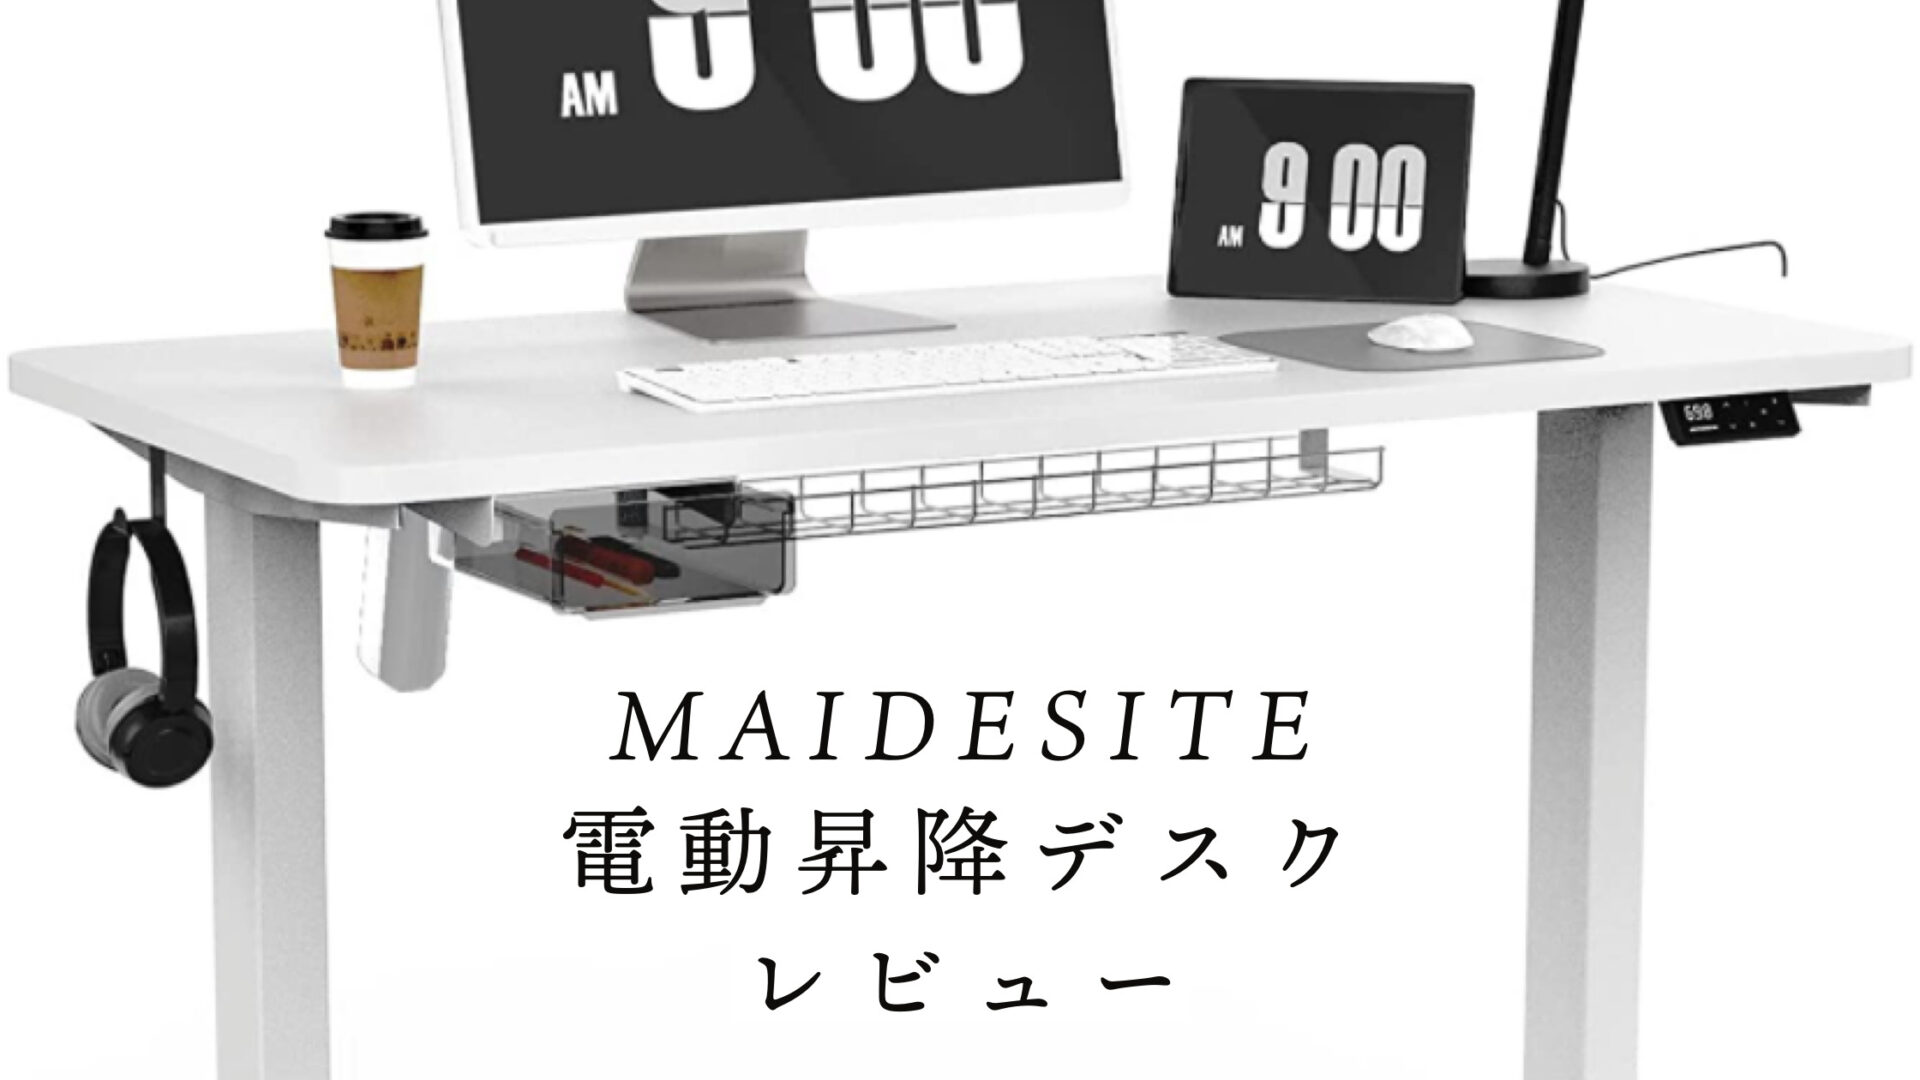 Maidesite T2 Pro 電動昇降デスク パソコンデスク 昇降式デスク スタンディング - 3